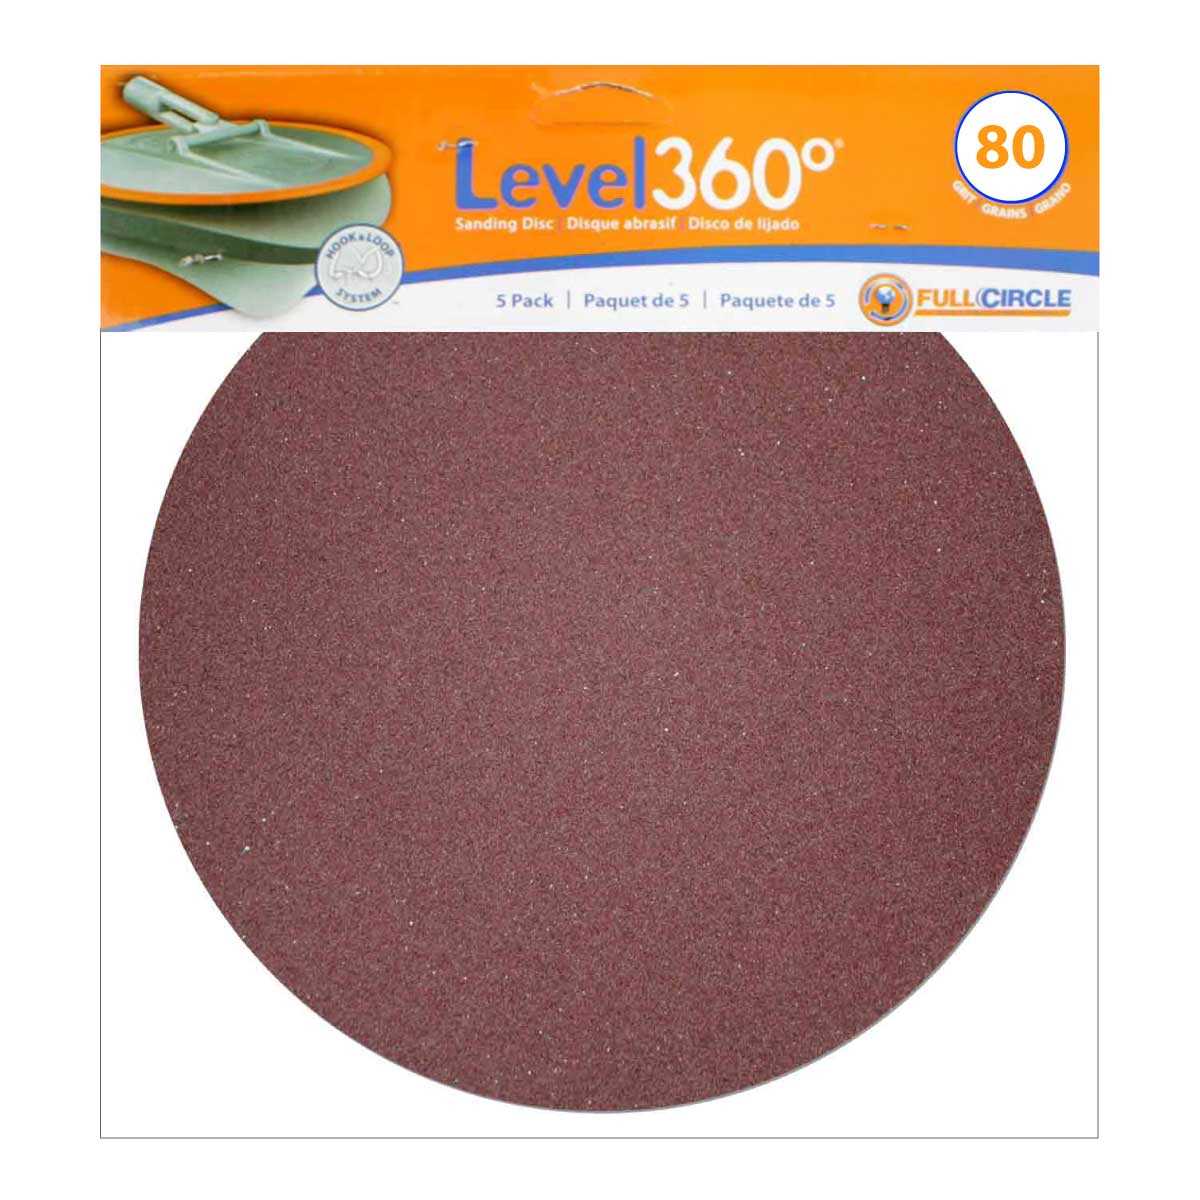 Level 360 Sanding Discs 80